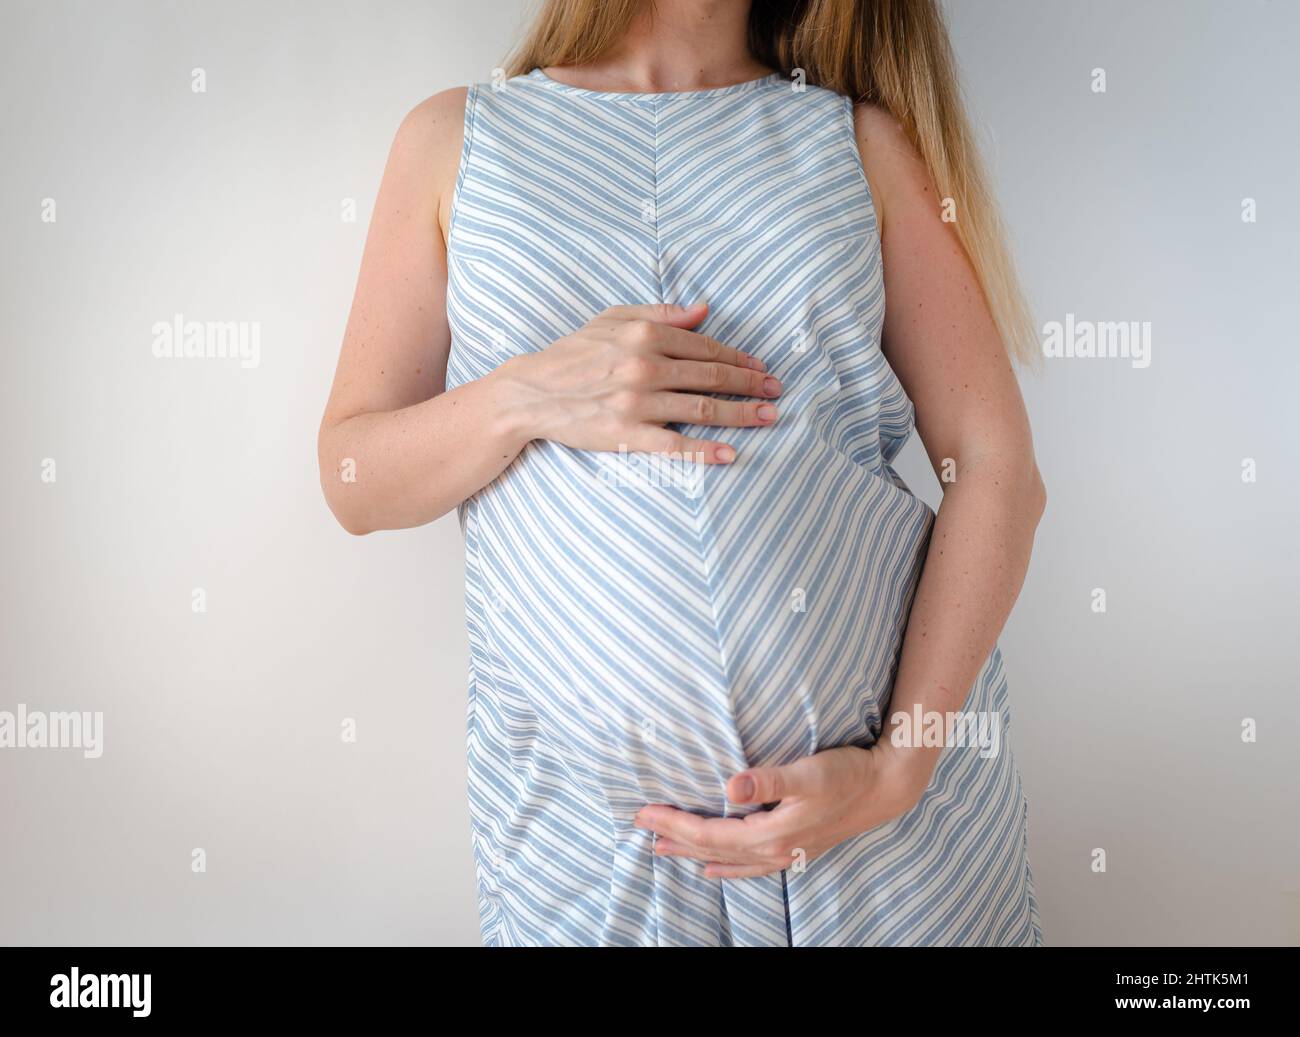 Eine Schwangere in einem blauen Kleid mit weißem Streifen, steht auf weißem Hintergrund und hält ihre Hände auf dem Bauch, das Konzept der Erwartung eines Stockfoto